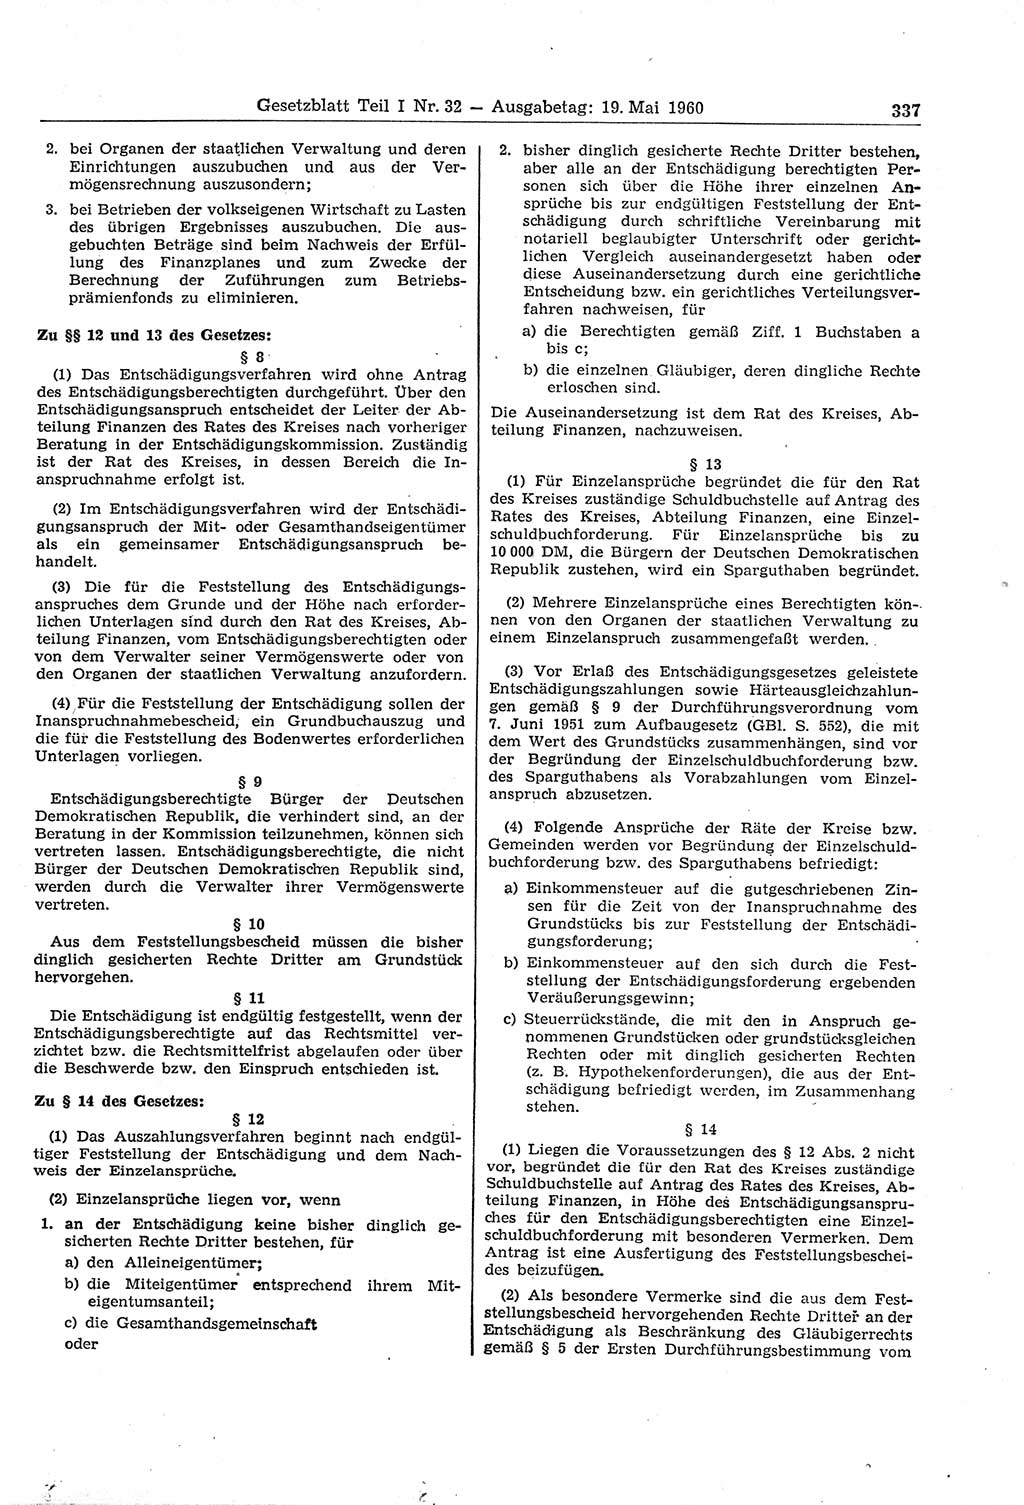 Gesetzblatt (GBl.) der Deutschen Demokratischen Republik (DDR) Teil Ⅰ 1960, Seite 337 (GBl. DDR Ⅰ 1960, S. 337)